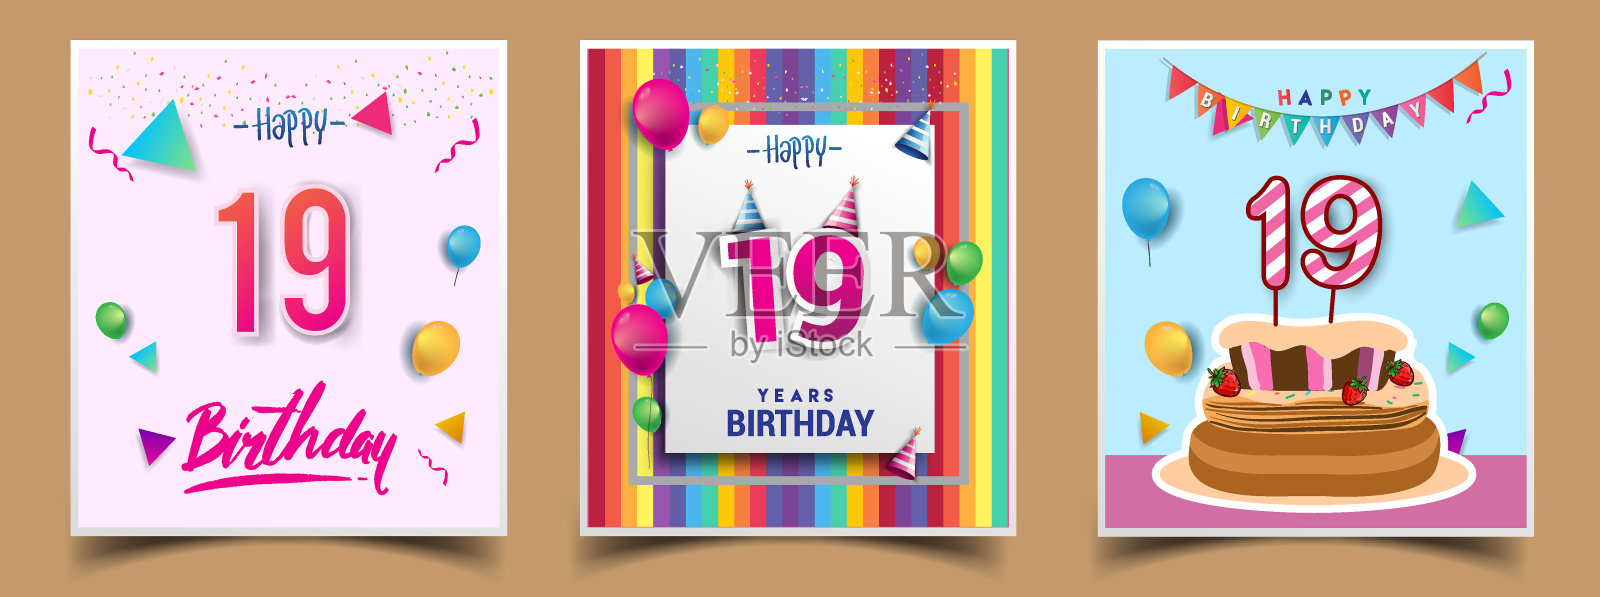 矢量组生日邀请，贺卡设计，与五彩纸屑和气球，生日蛋糕，彩色矢量模板元素为您的生日庆祝会。设计模板素材